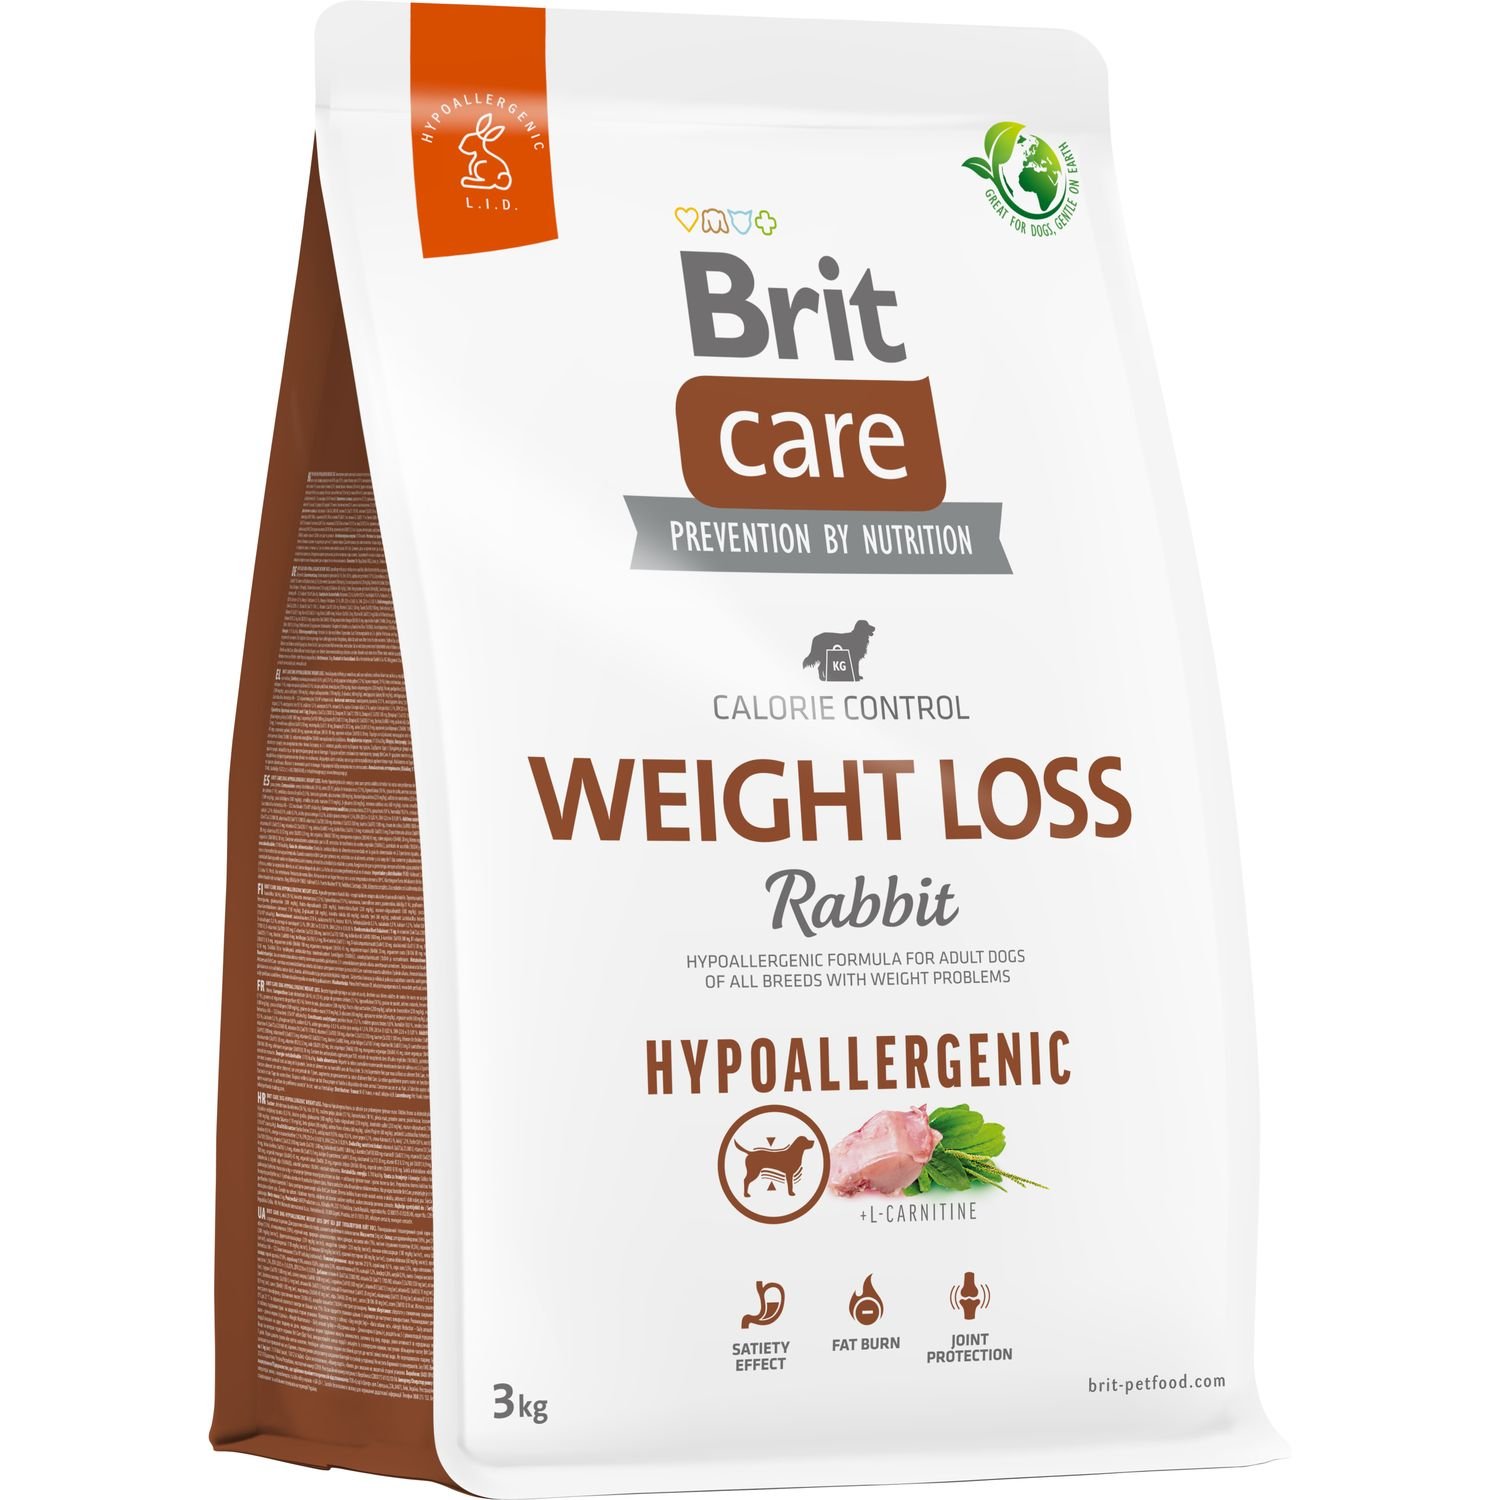 Сухой корм для собак с лишним весом Brit Care Dog Hypoallergenic Weight Loss, гипоаллергенный, с кроликом, 3 кг - фото 1